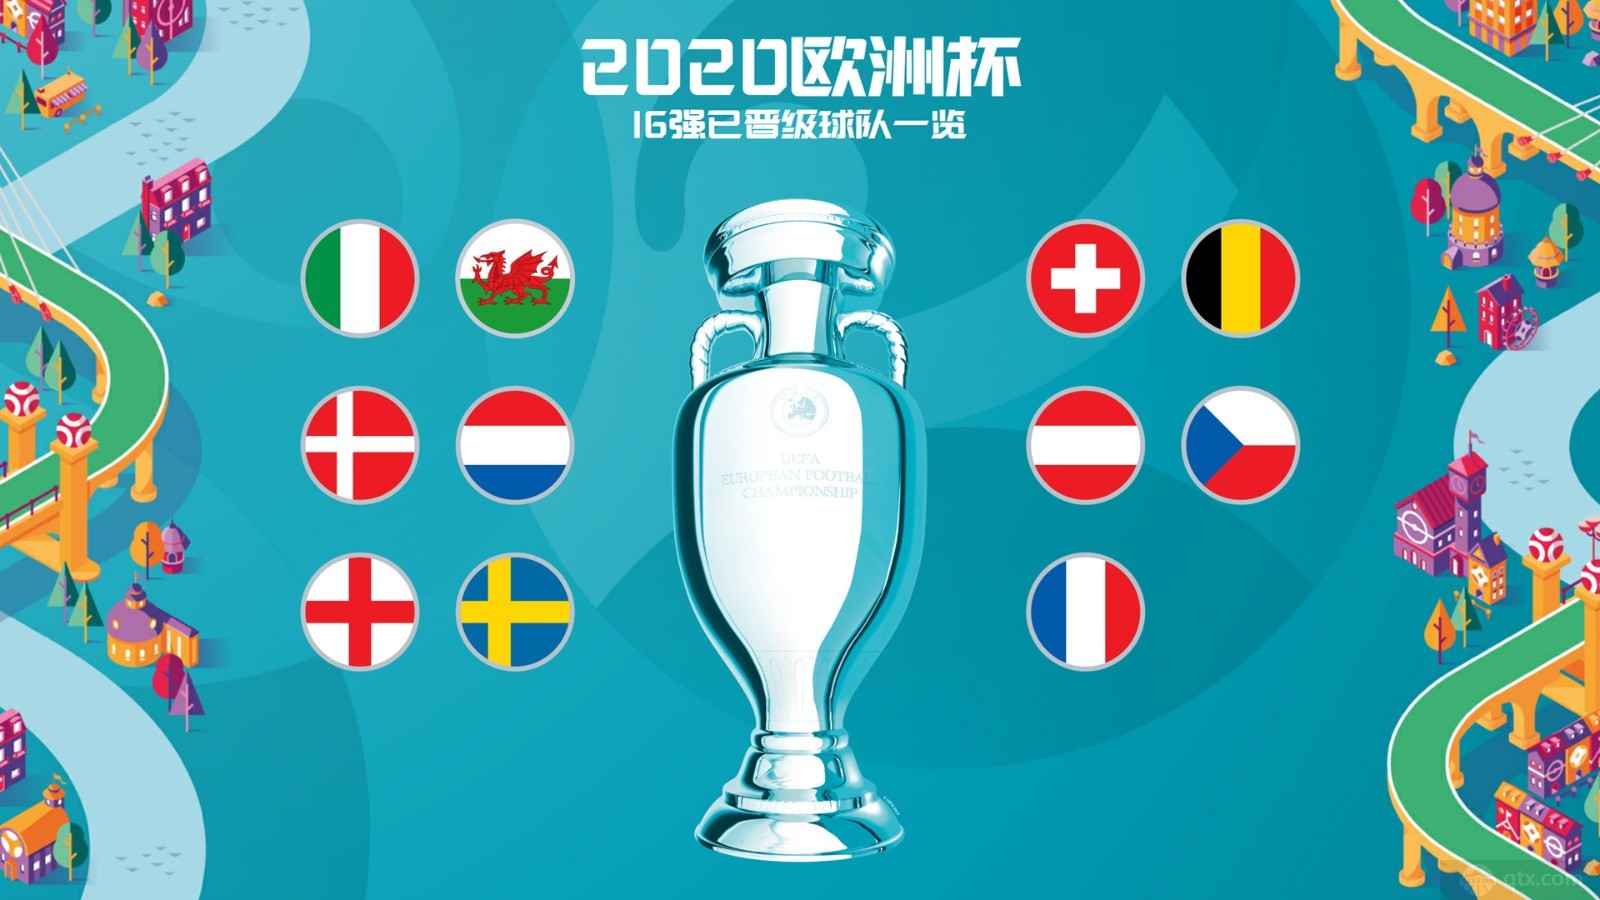 意大利、荷兰、比利时、丹麦、英格兰、法国均晋级